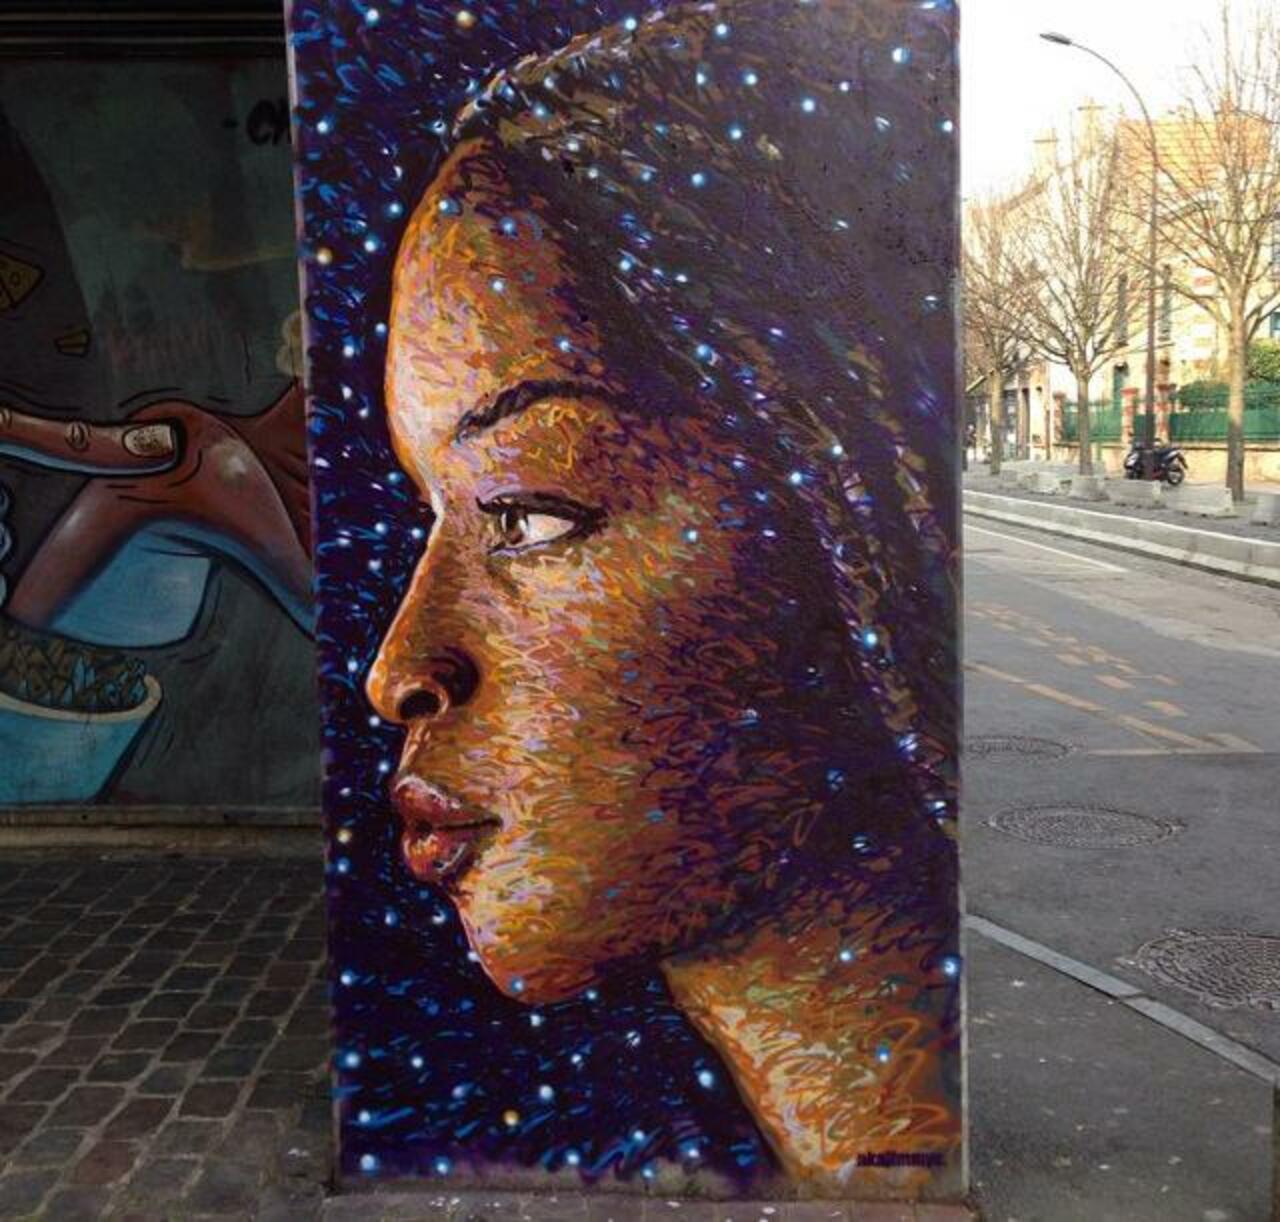 Street Art by Jimmy C in Vitry sur Seine, Paris

#art #arte #graffiti #streetart http://t.co/dGfWxBMUU0